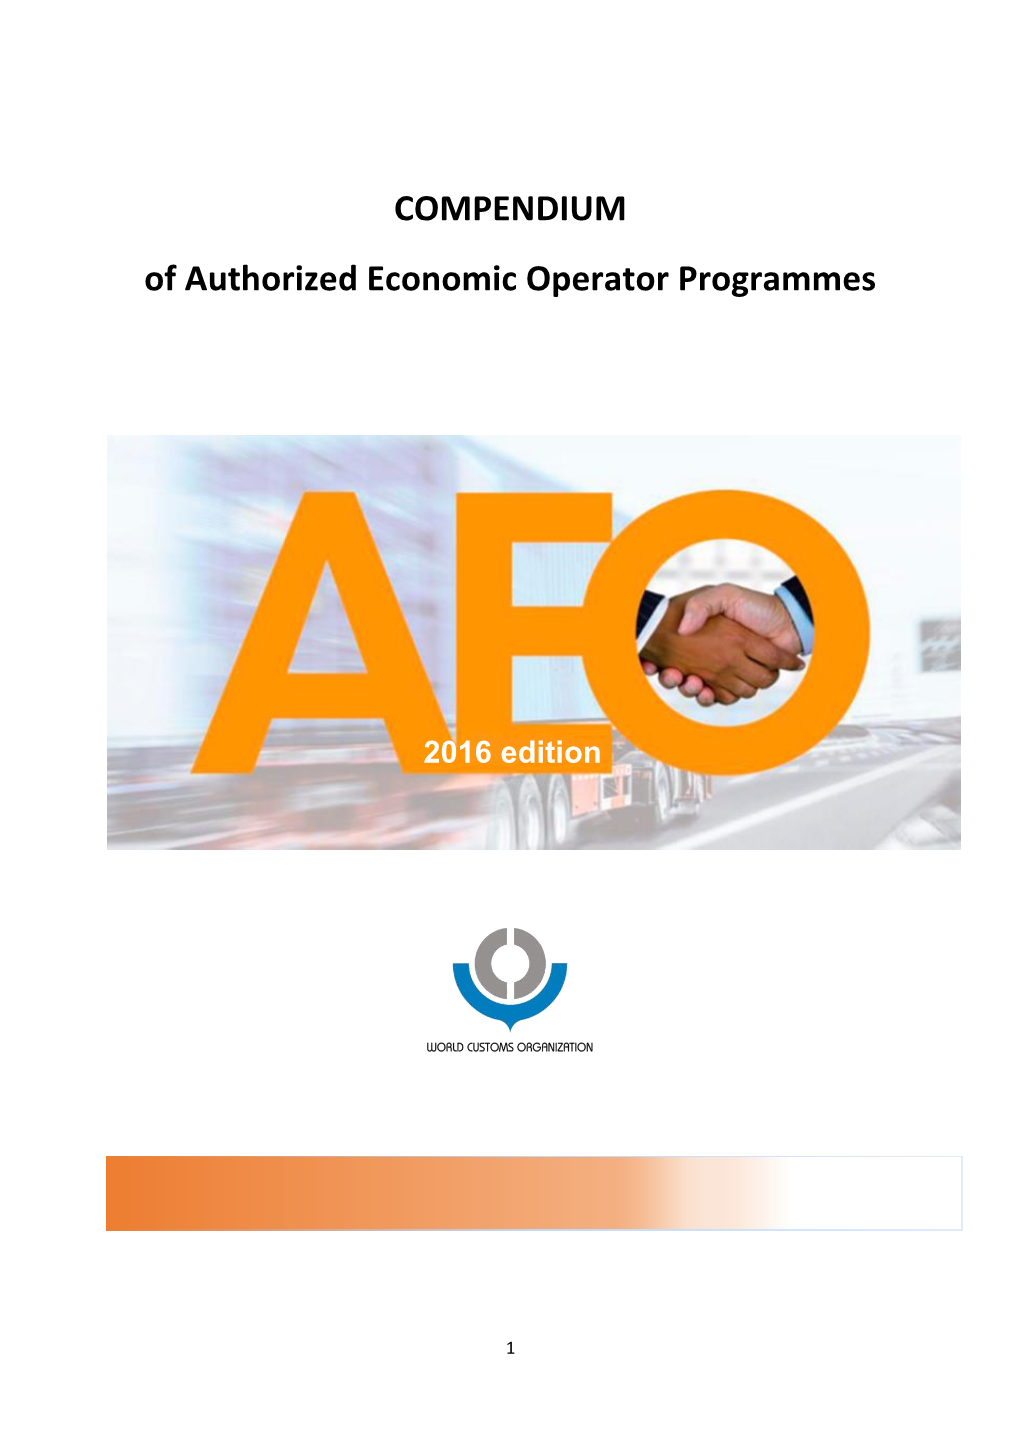 COMPENDIUM of Authorized Economic Operator Programmes